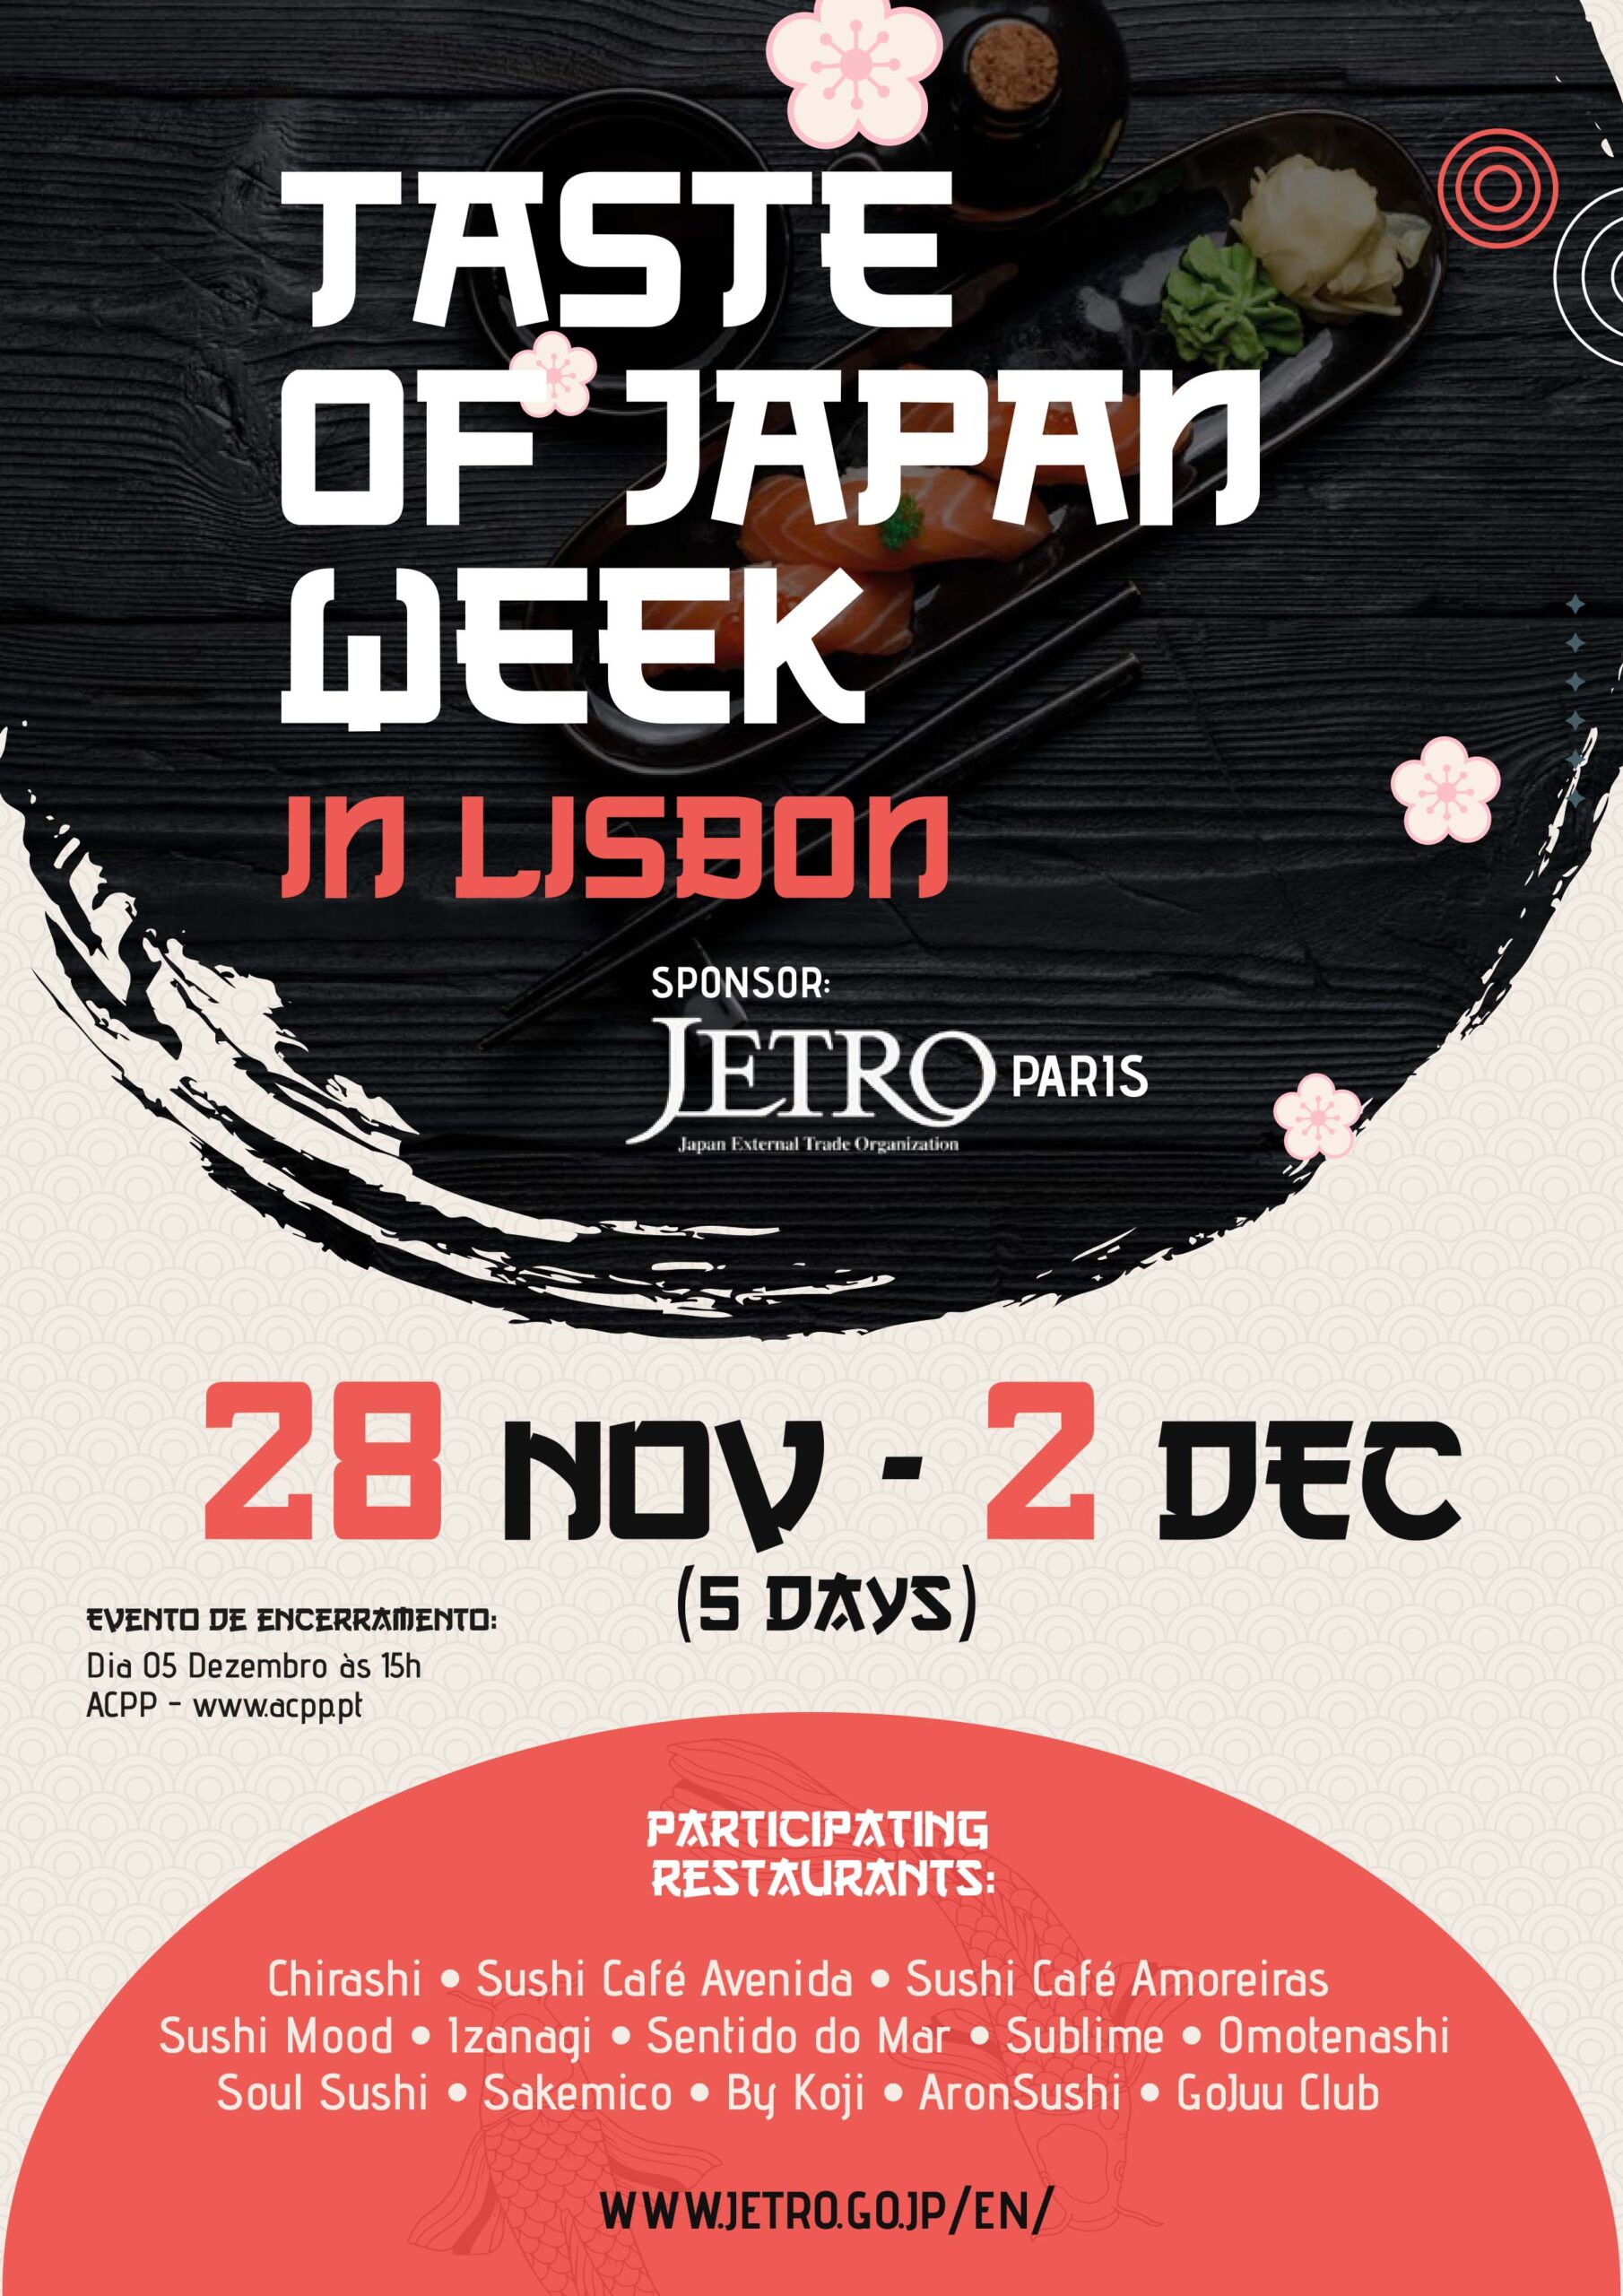 Taste of Japan Week em Lisboa